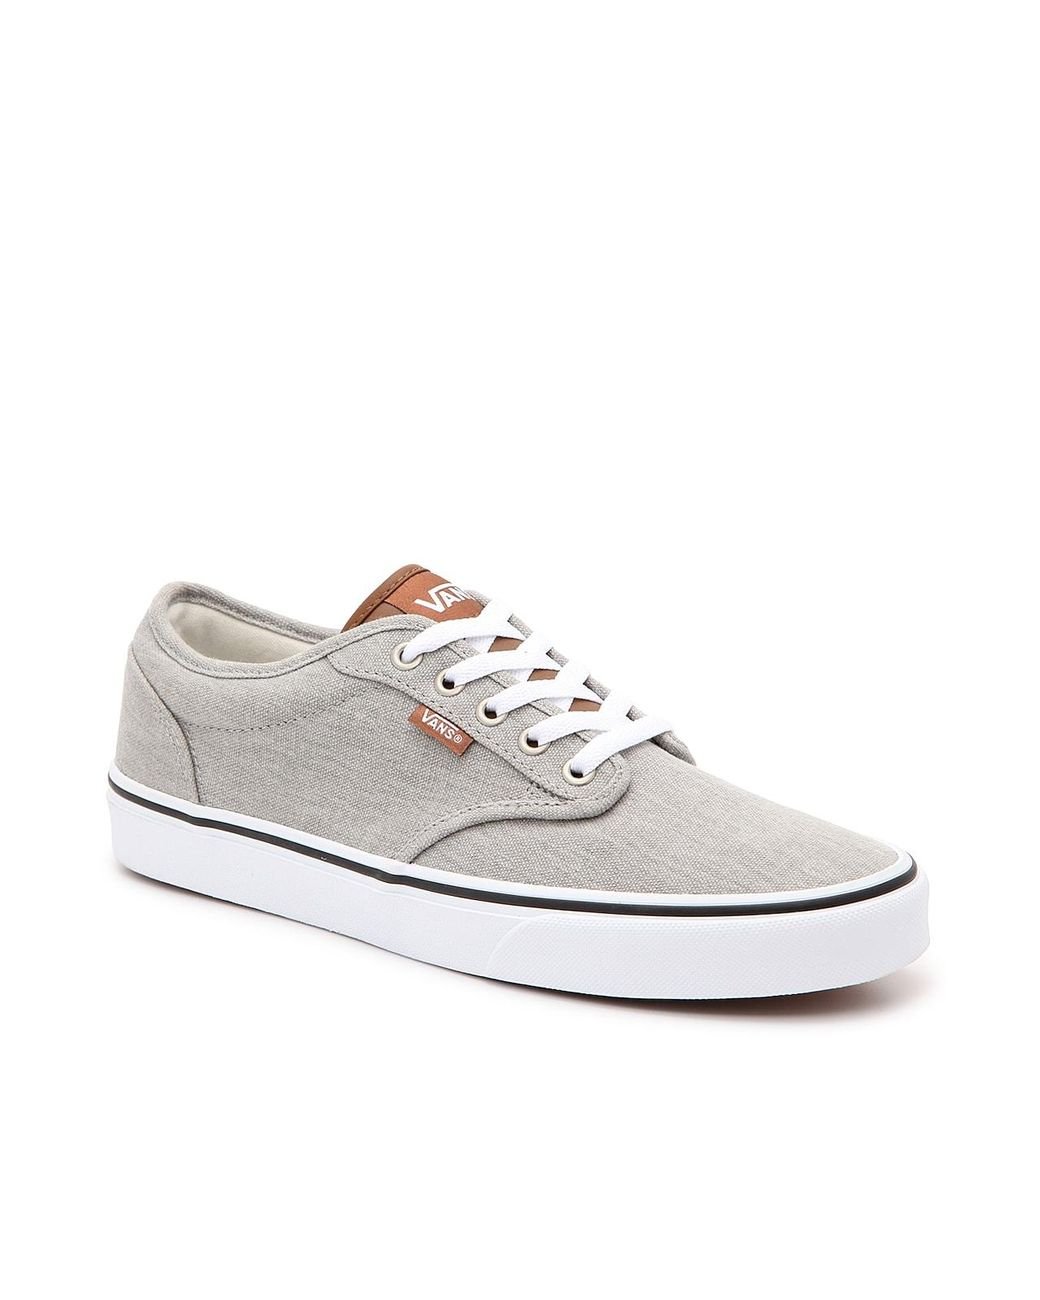 Vans Atwood Sneaker in Grey/Cognac (Gray) for Men - Lyst